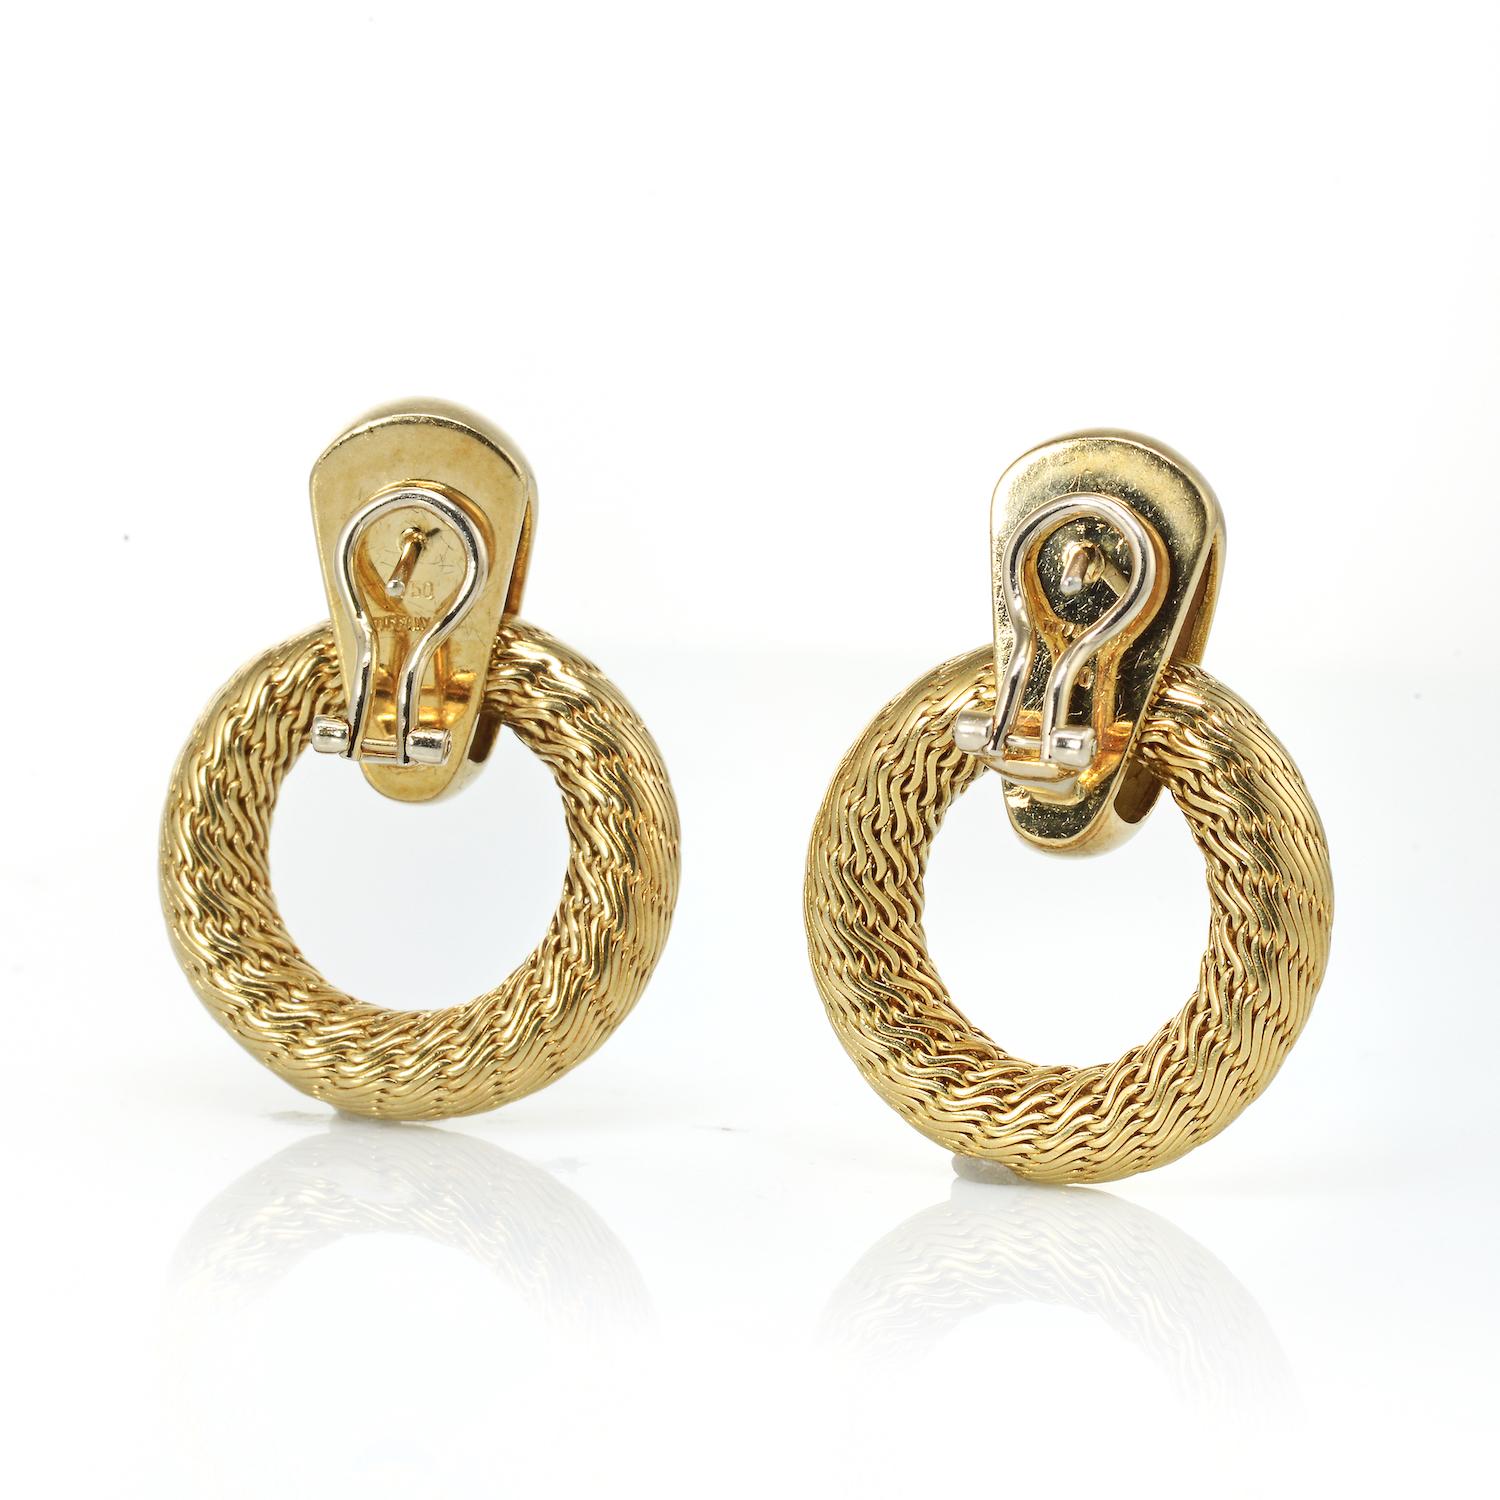 gold vintage earrings